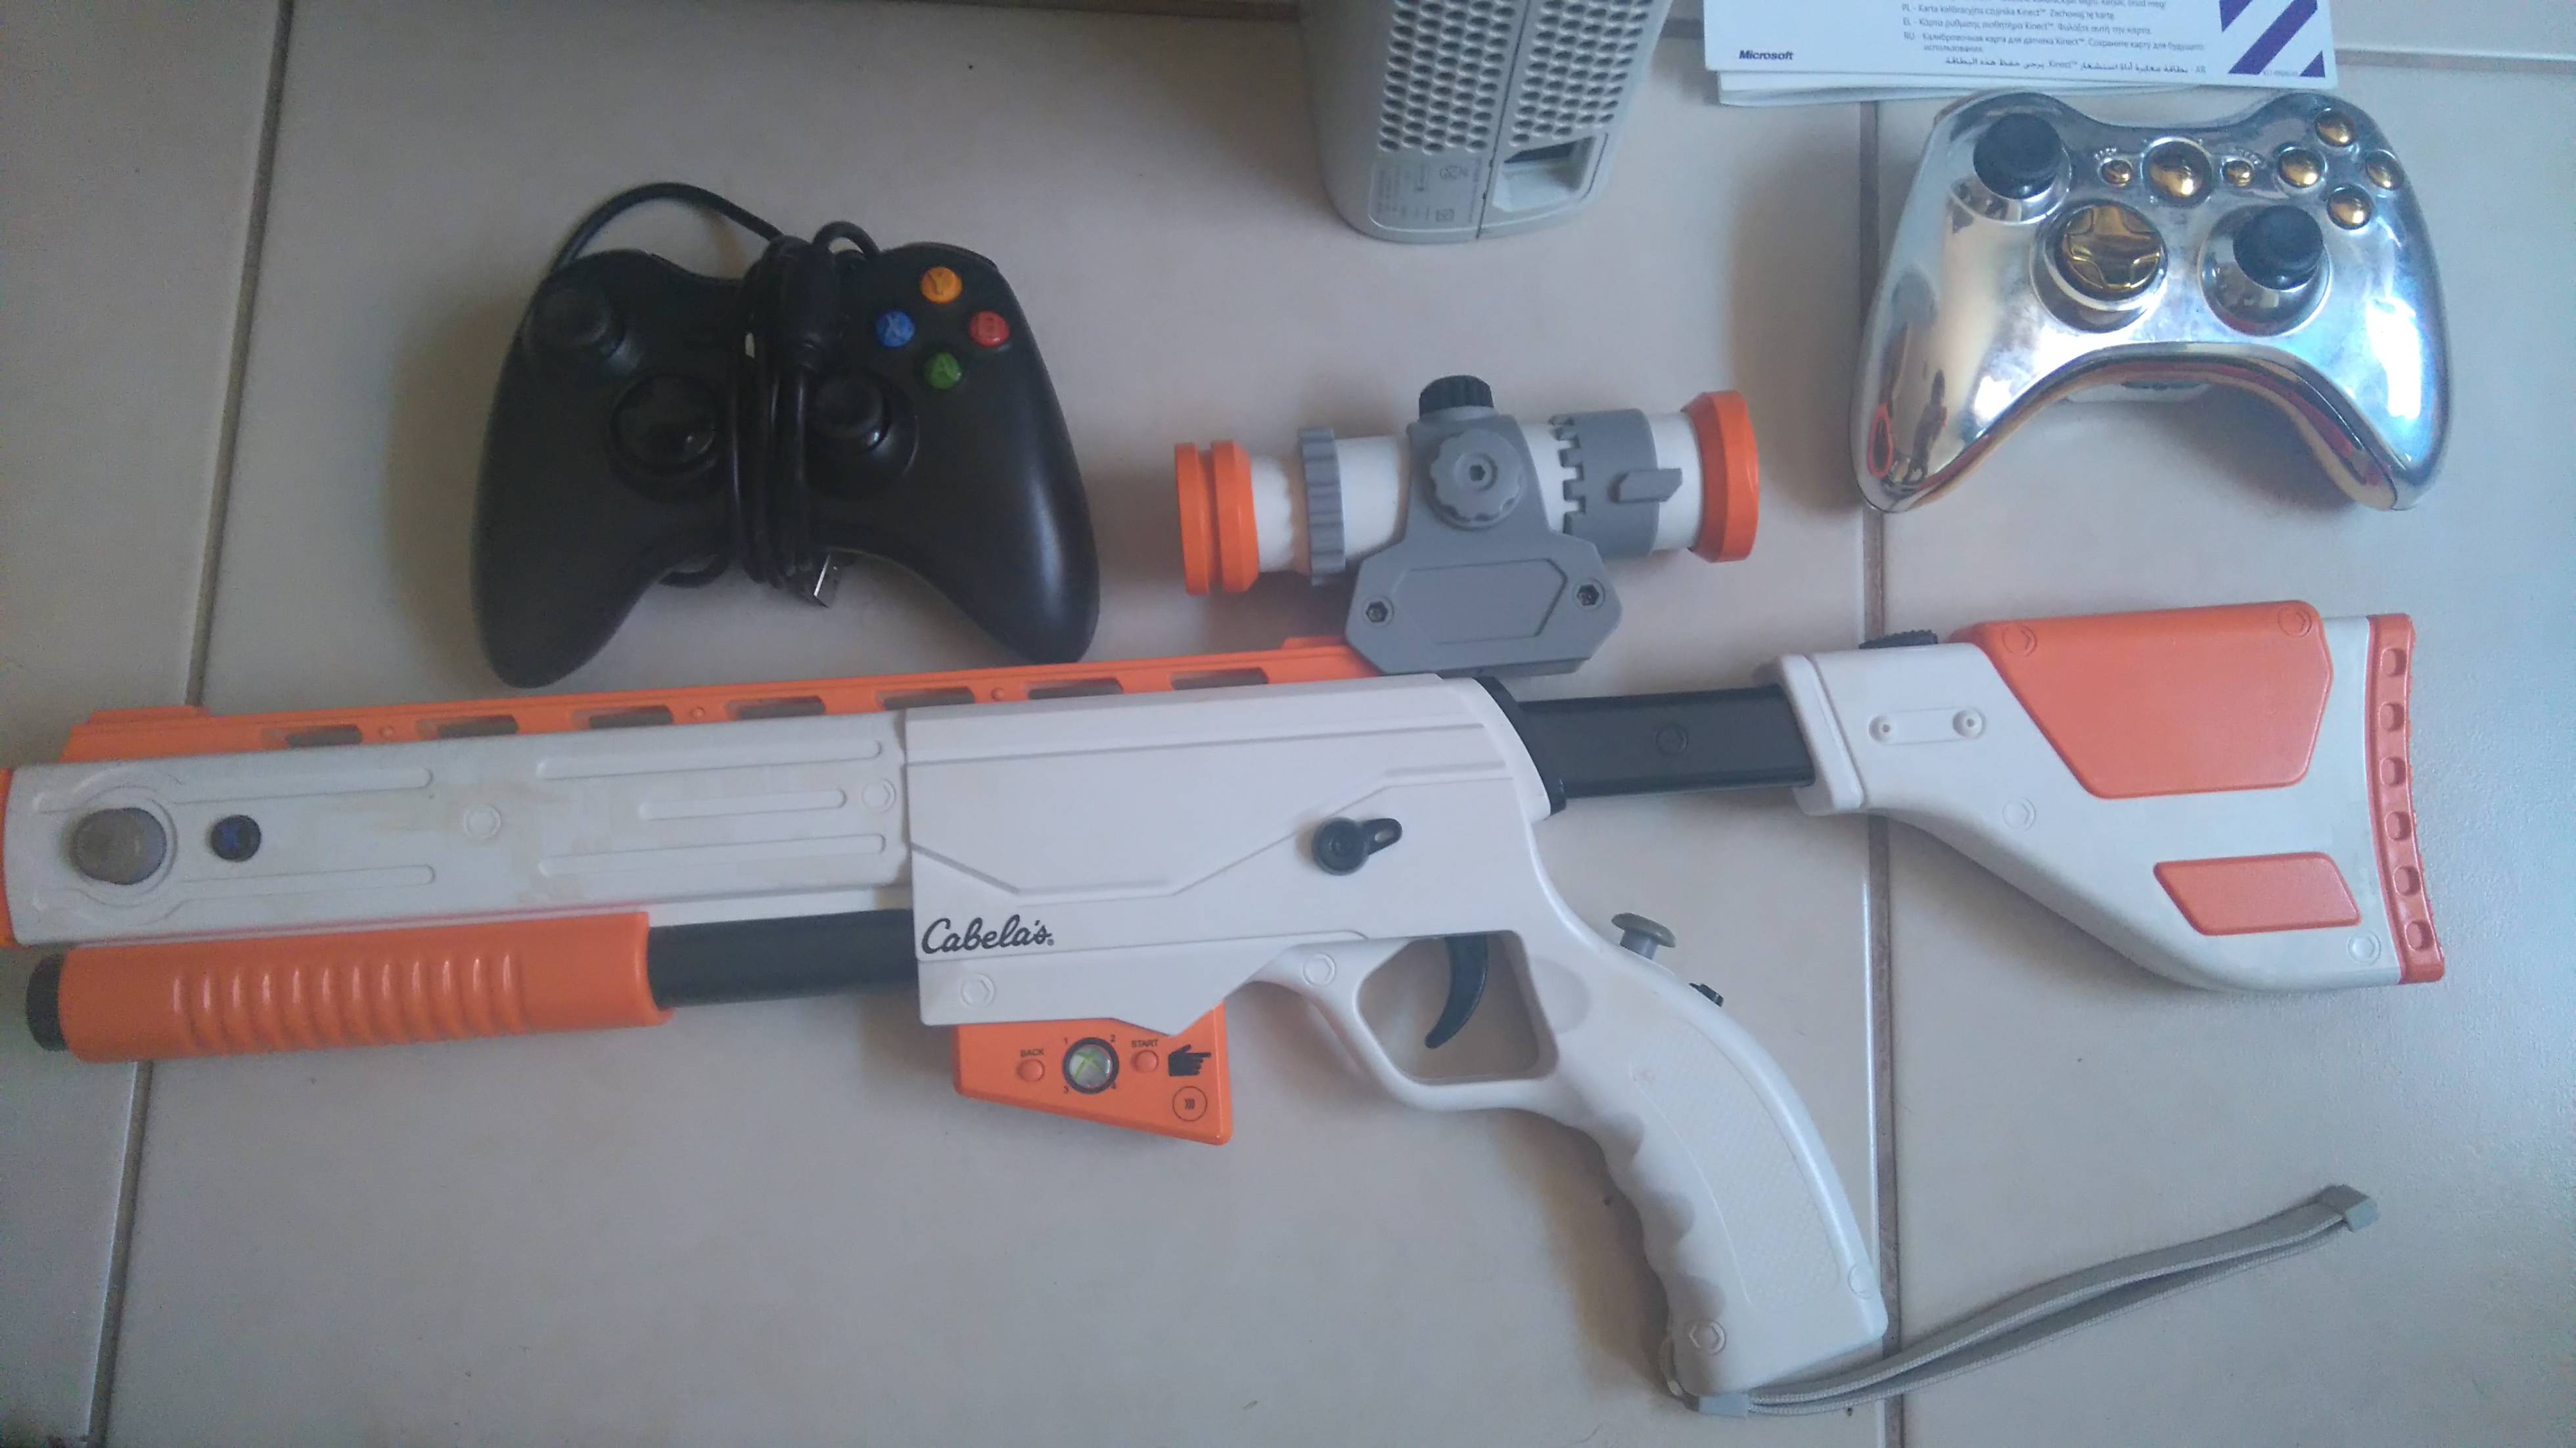 Pistola Xbox 360 Acessorios